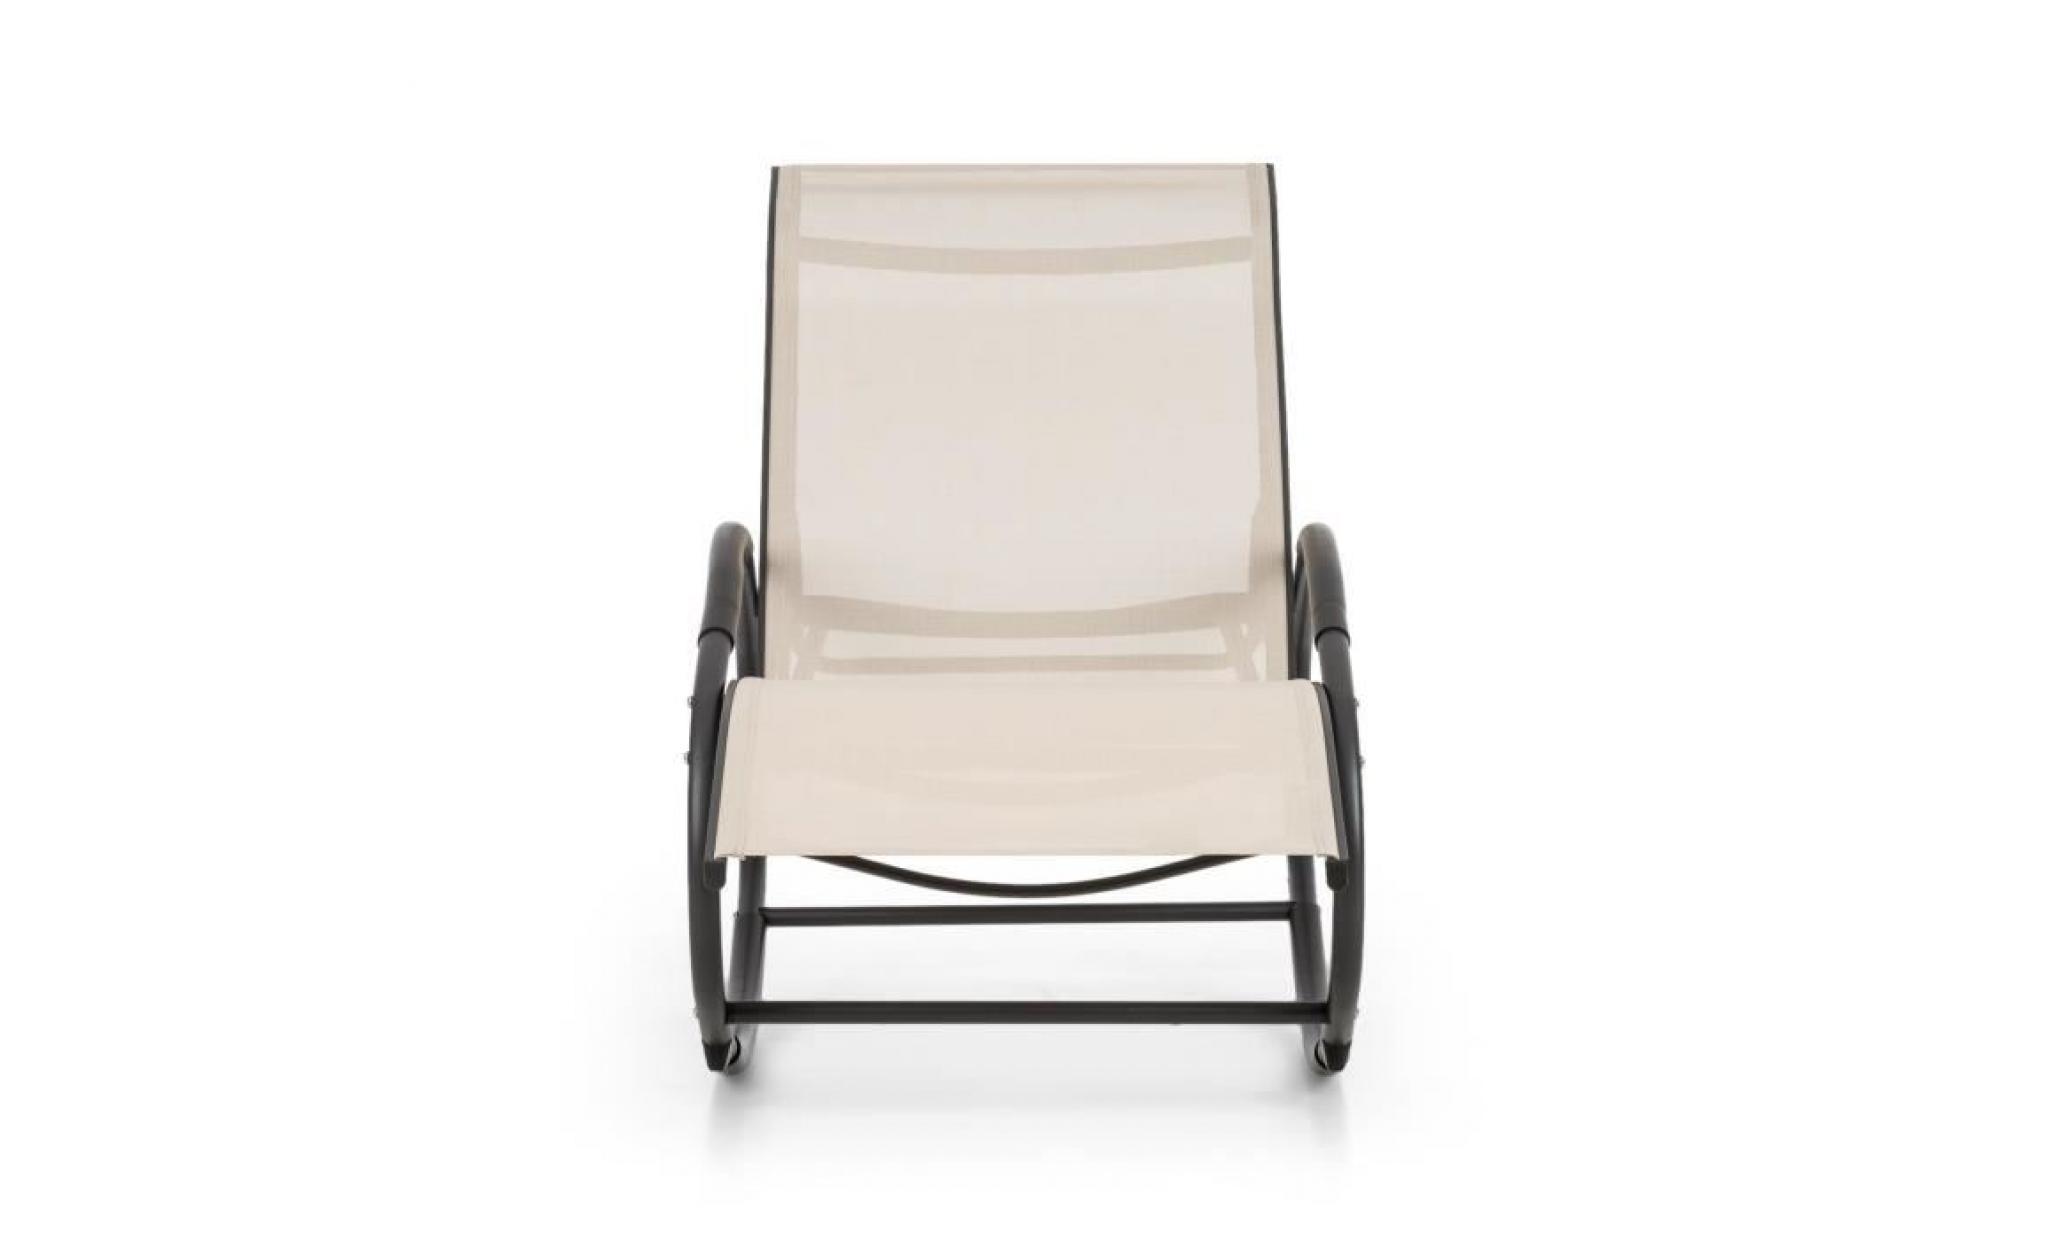 blumfeldt santorini fauteuil à bascule de jardin , chaise longue style rocking chair   tube aluminium   revêtement polyester   beige pas cher